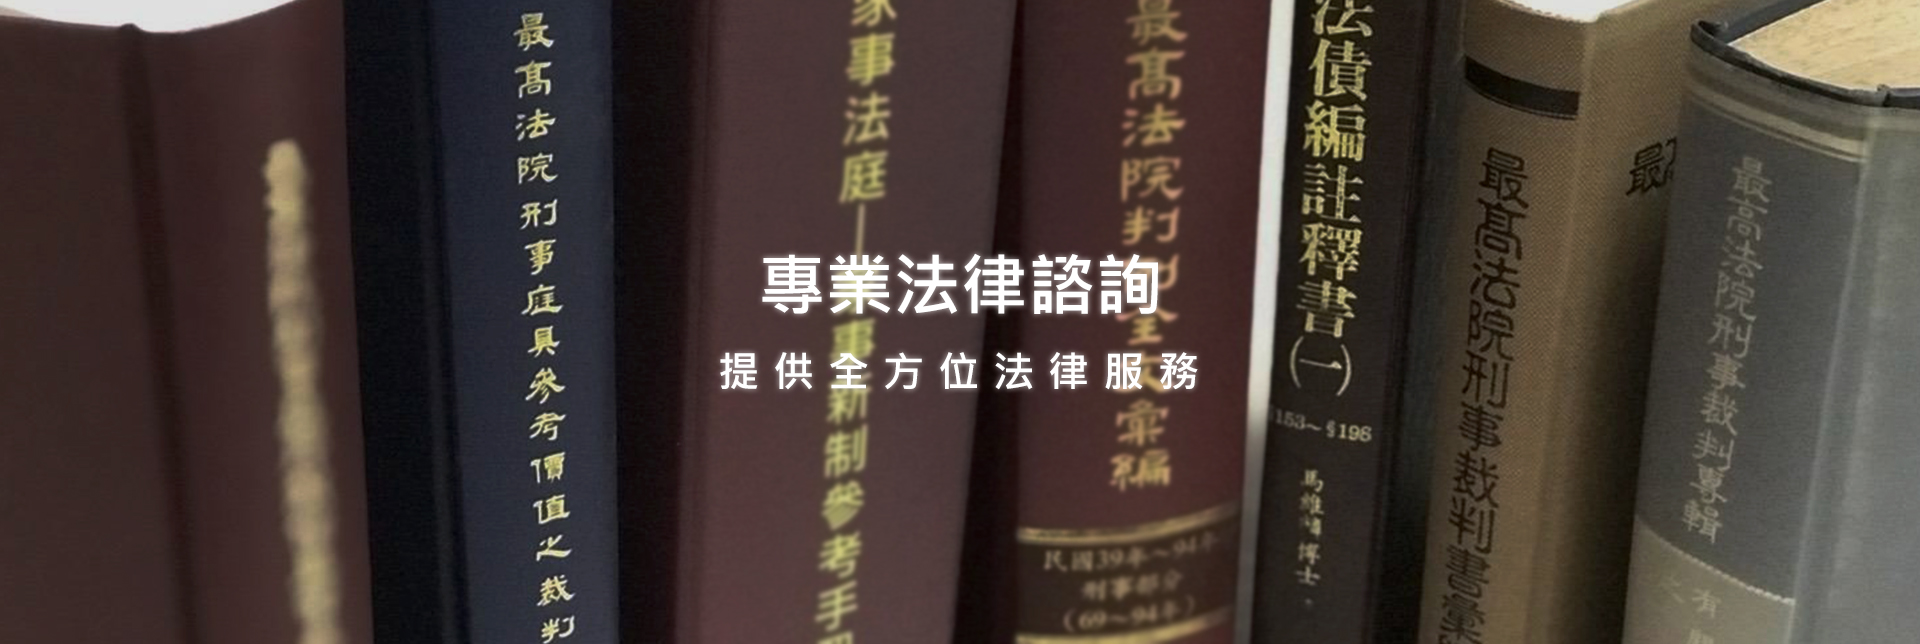 台南律師諮詢